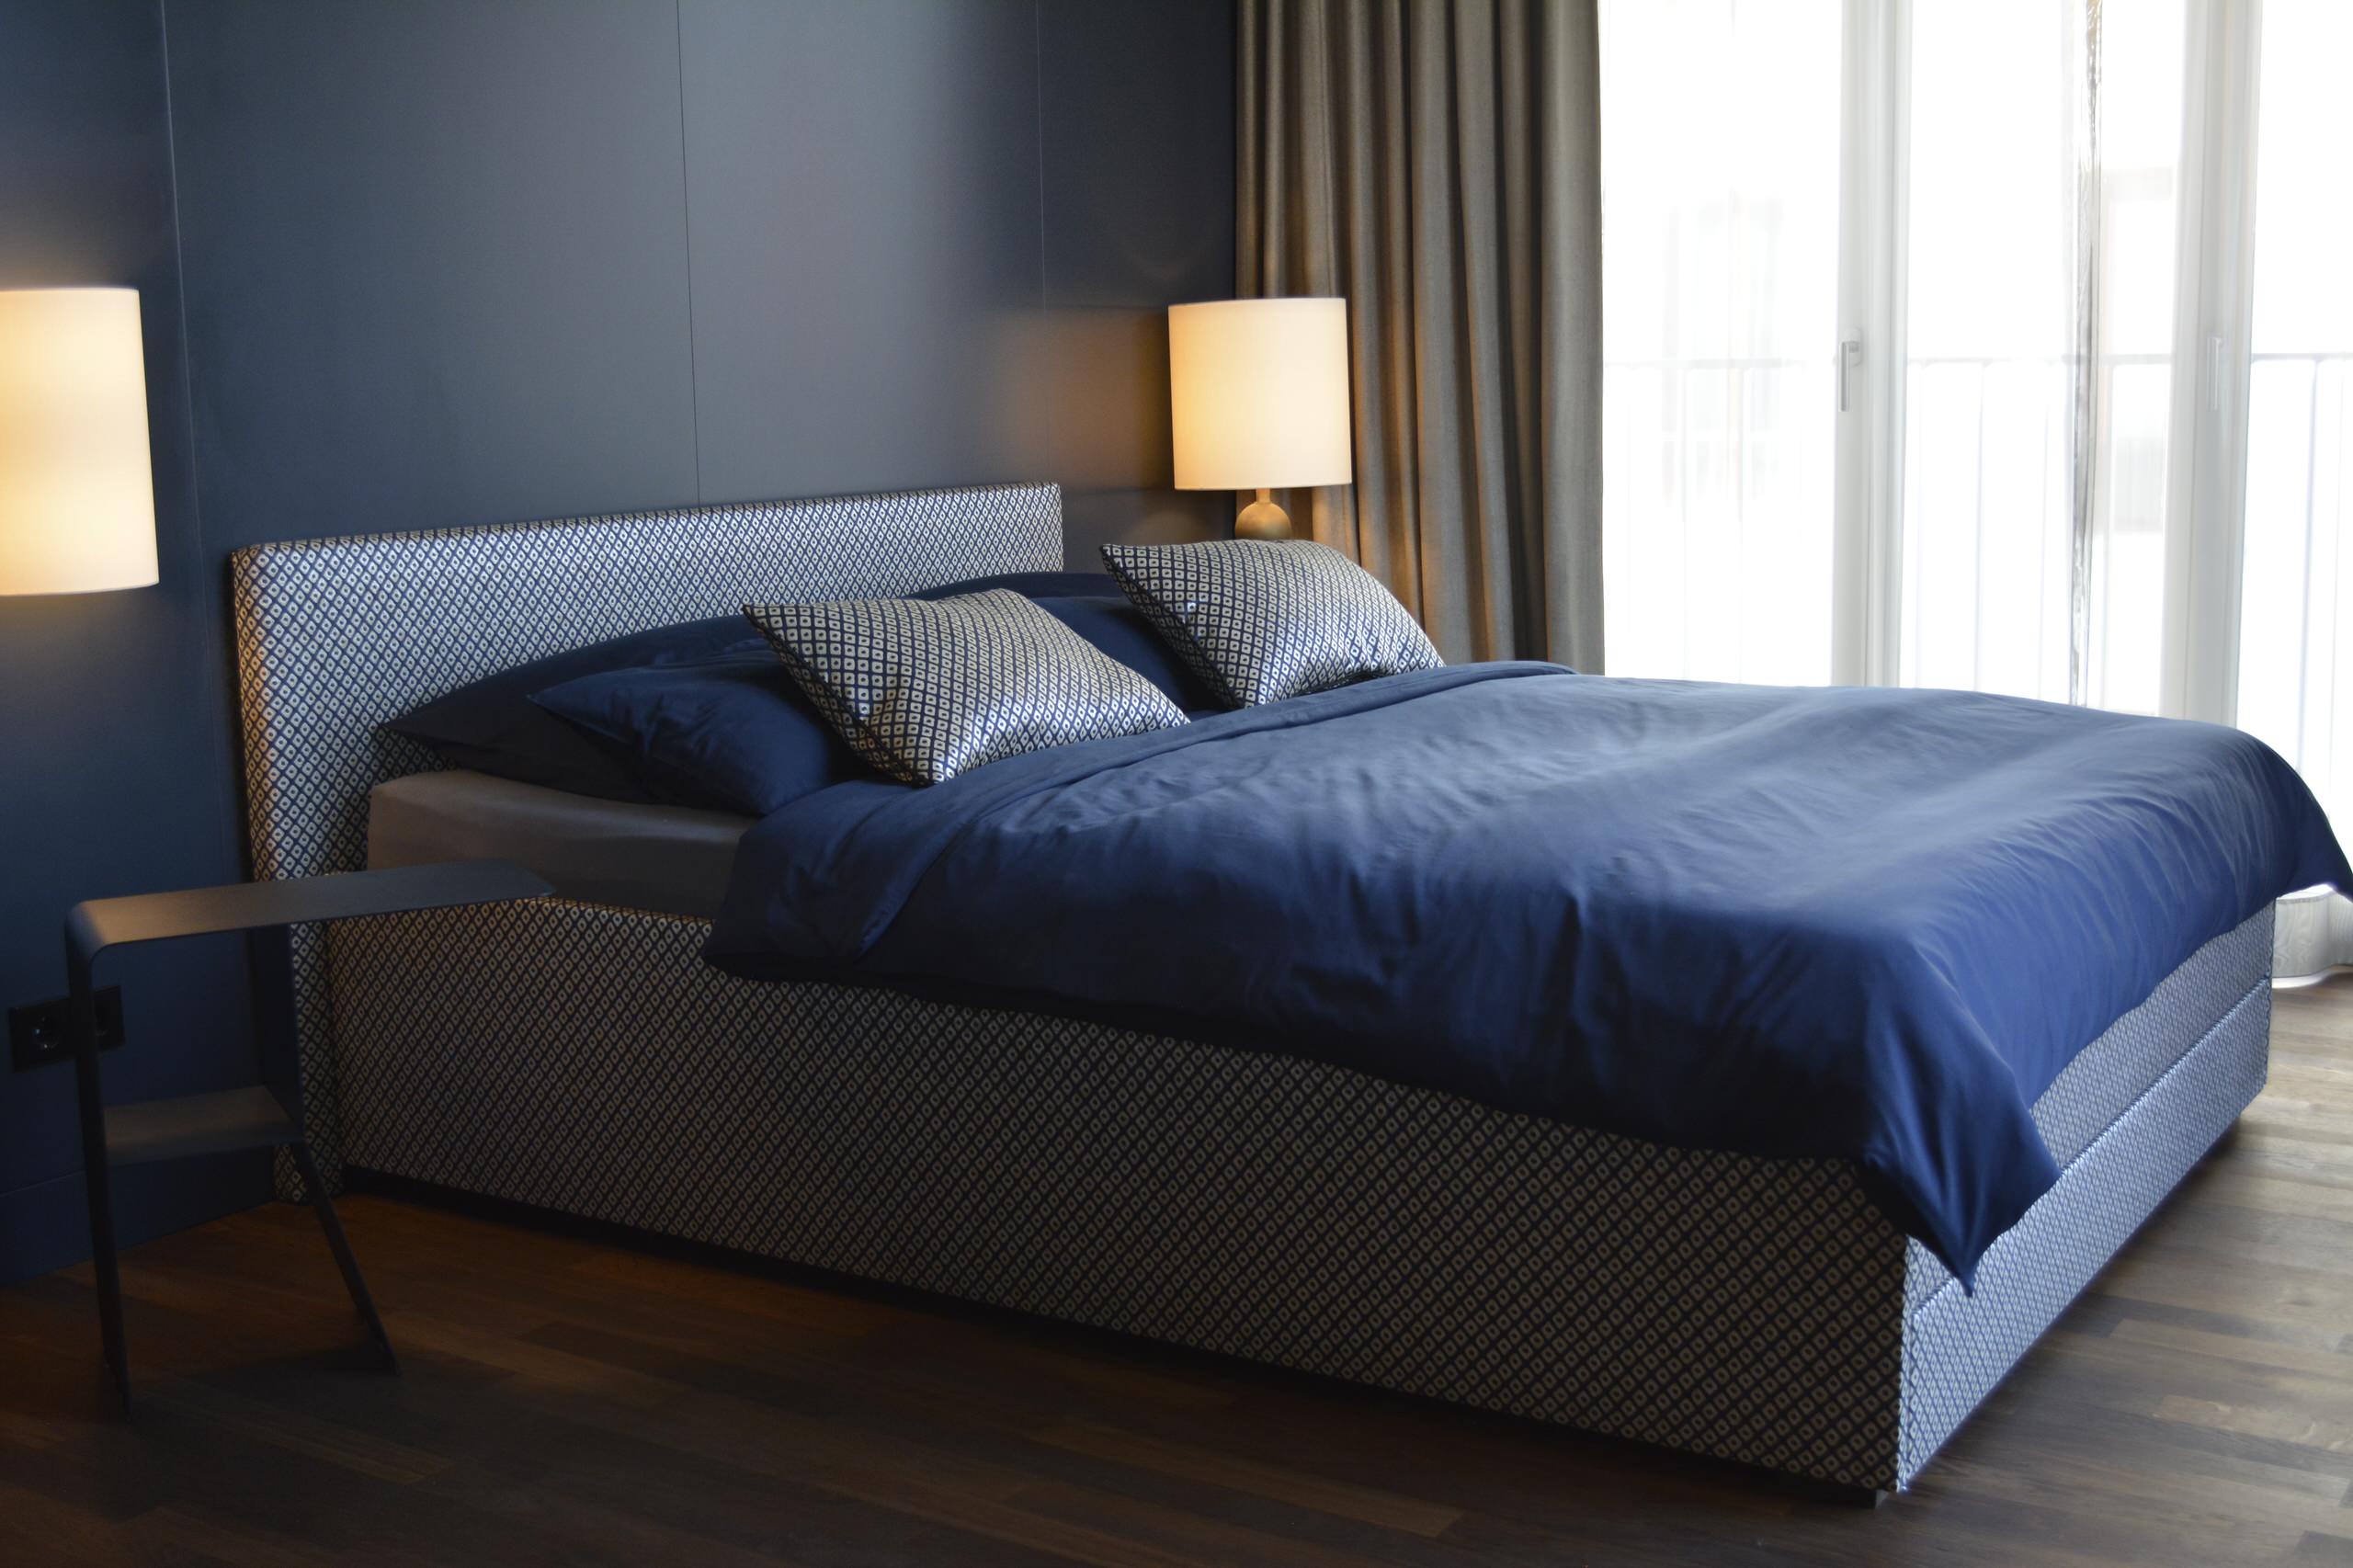 Bett in blau -  modernes Schlafzimmer